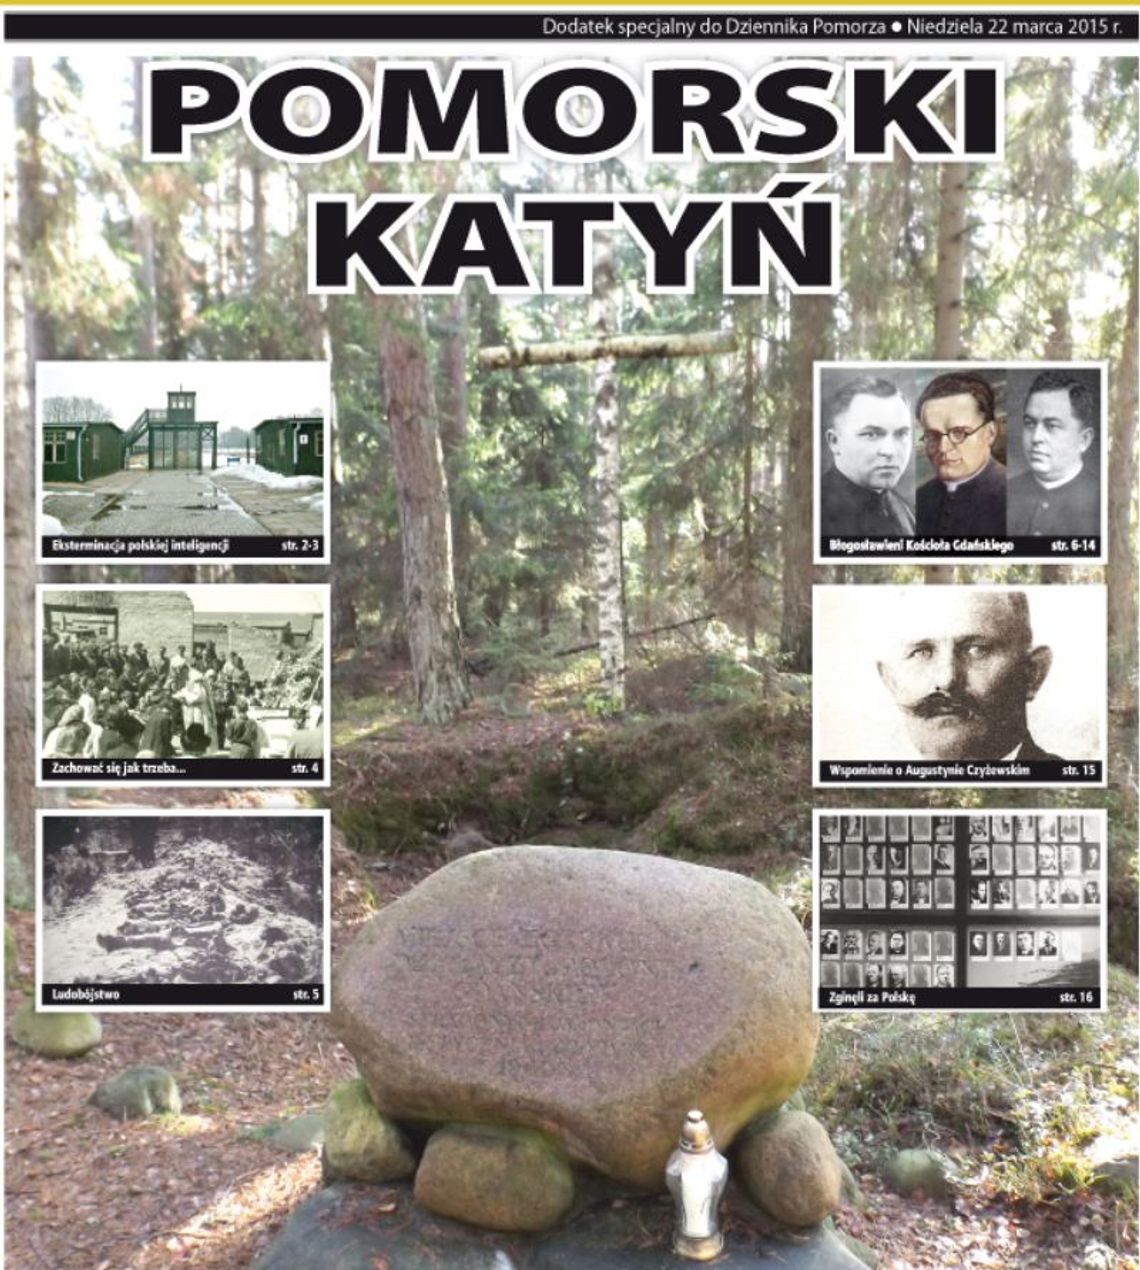 Historia Pomorza. Pomorski Katyń - rocznica Wielkiego Piątku 1940 roku!